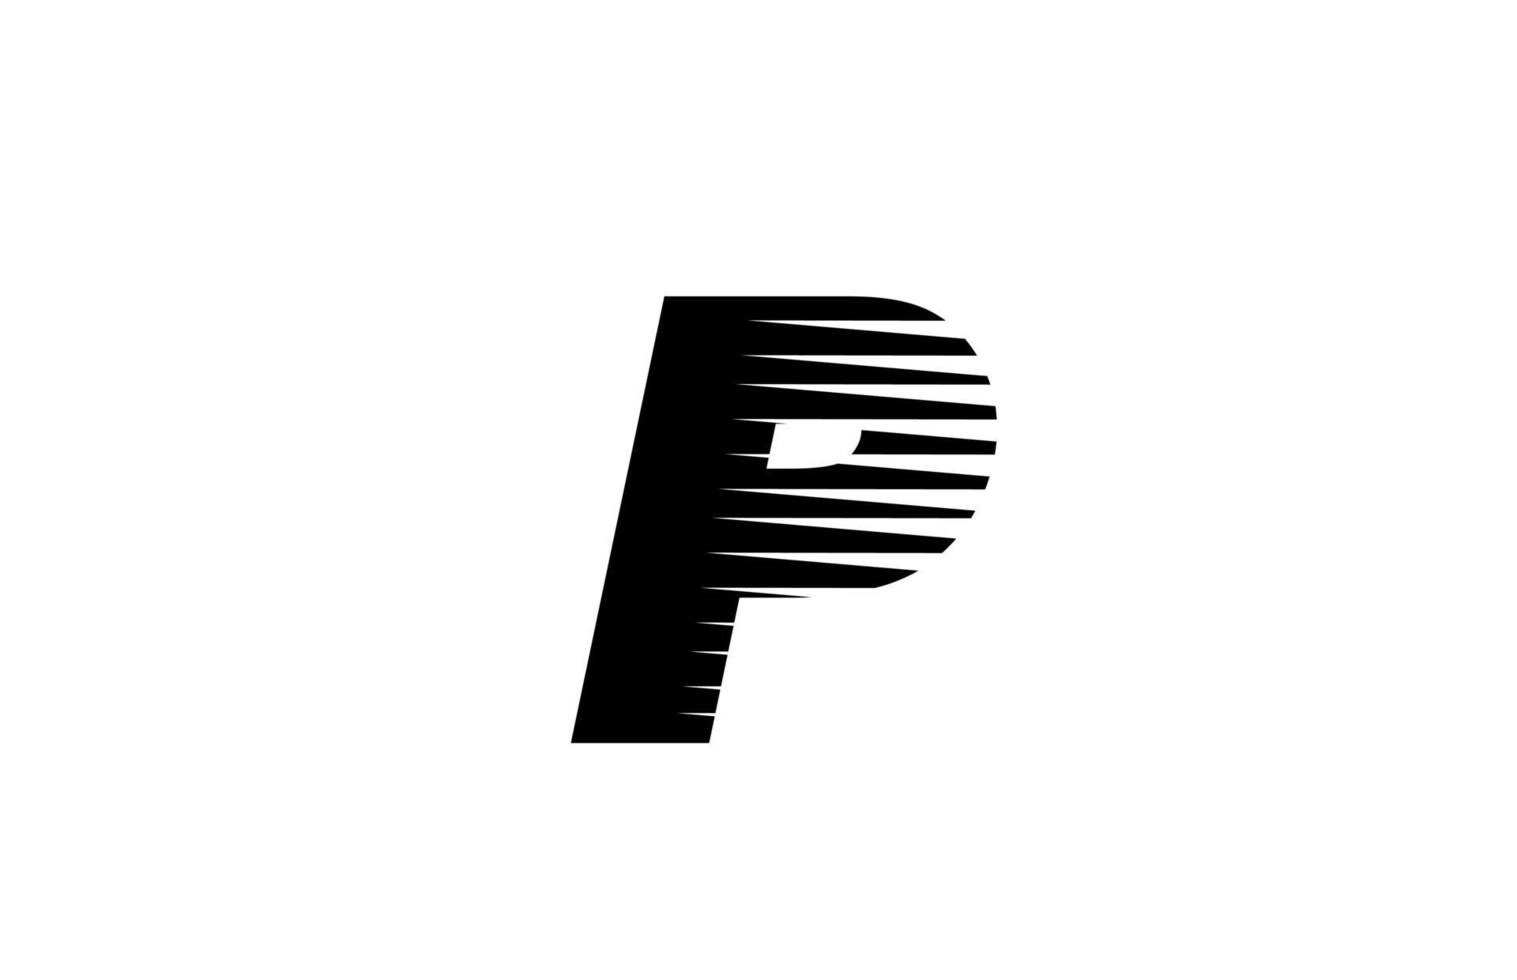 lijn strepen p alfabet letterpictogram logo voor zaken en bedrijf. eenvoudig zwart-wit letterontwerp voor identiteit vector